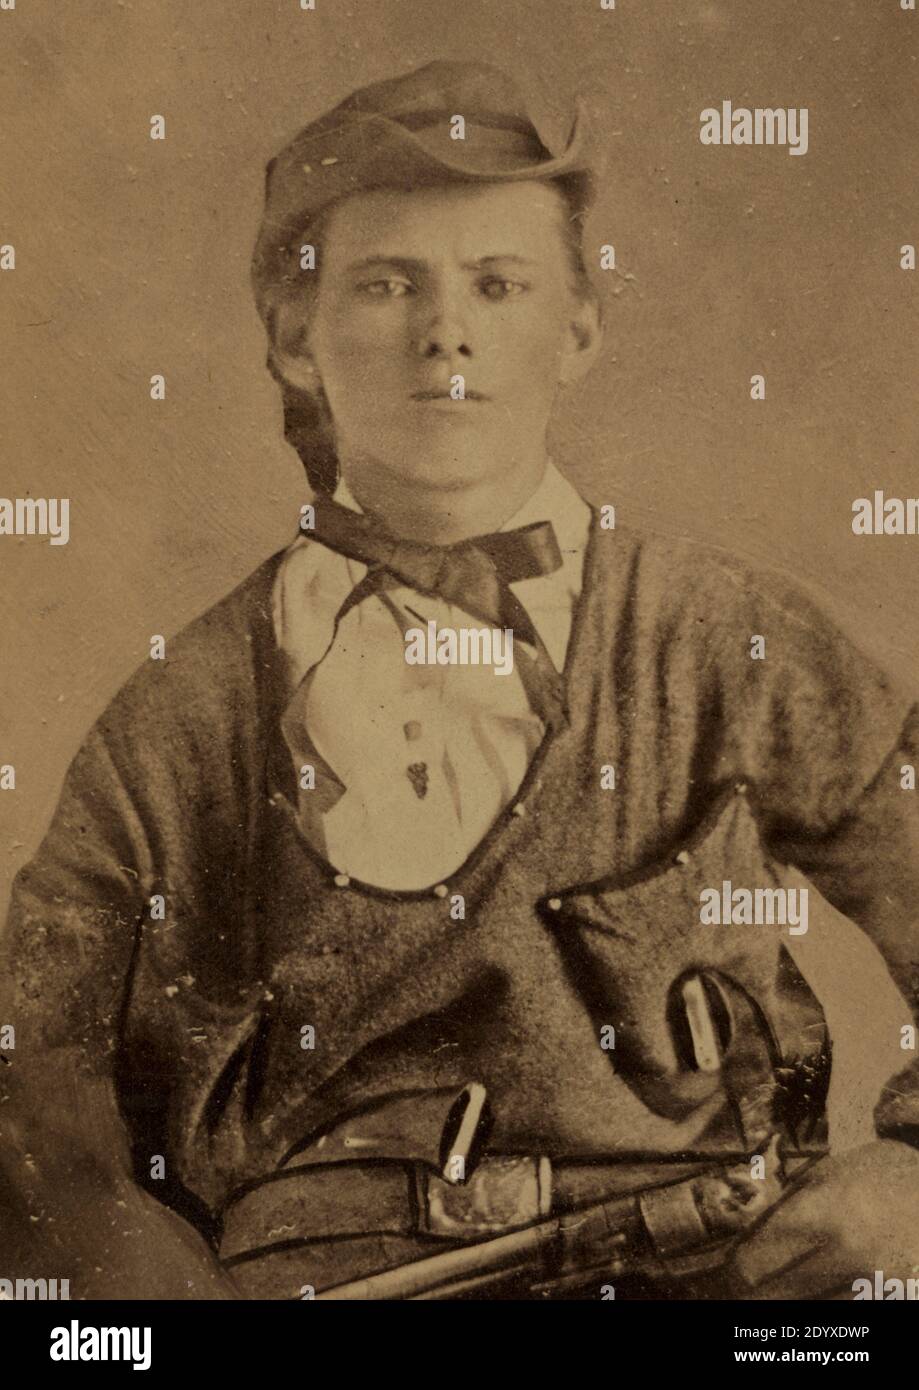 Antica fotografia d'epoca del fuorilegge americano Jesse James Foto Stock